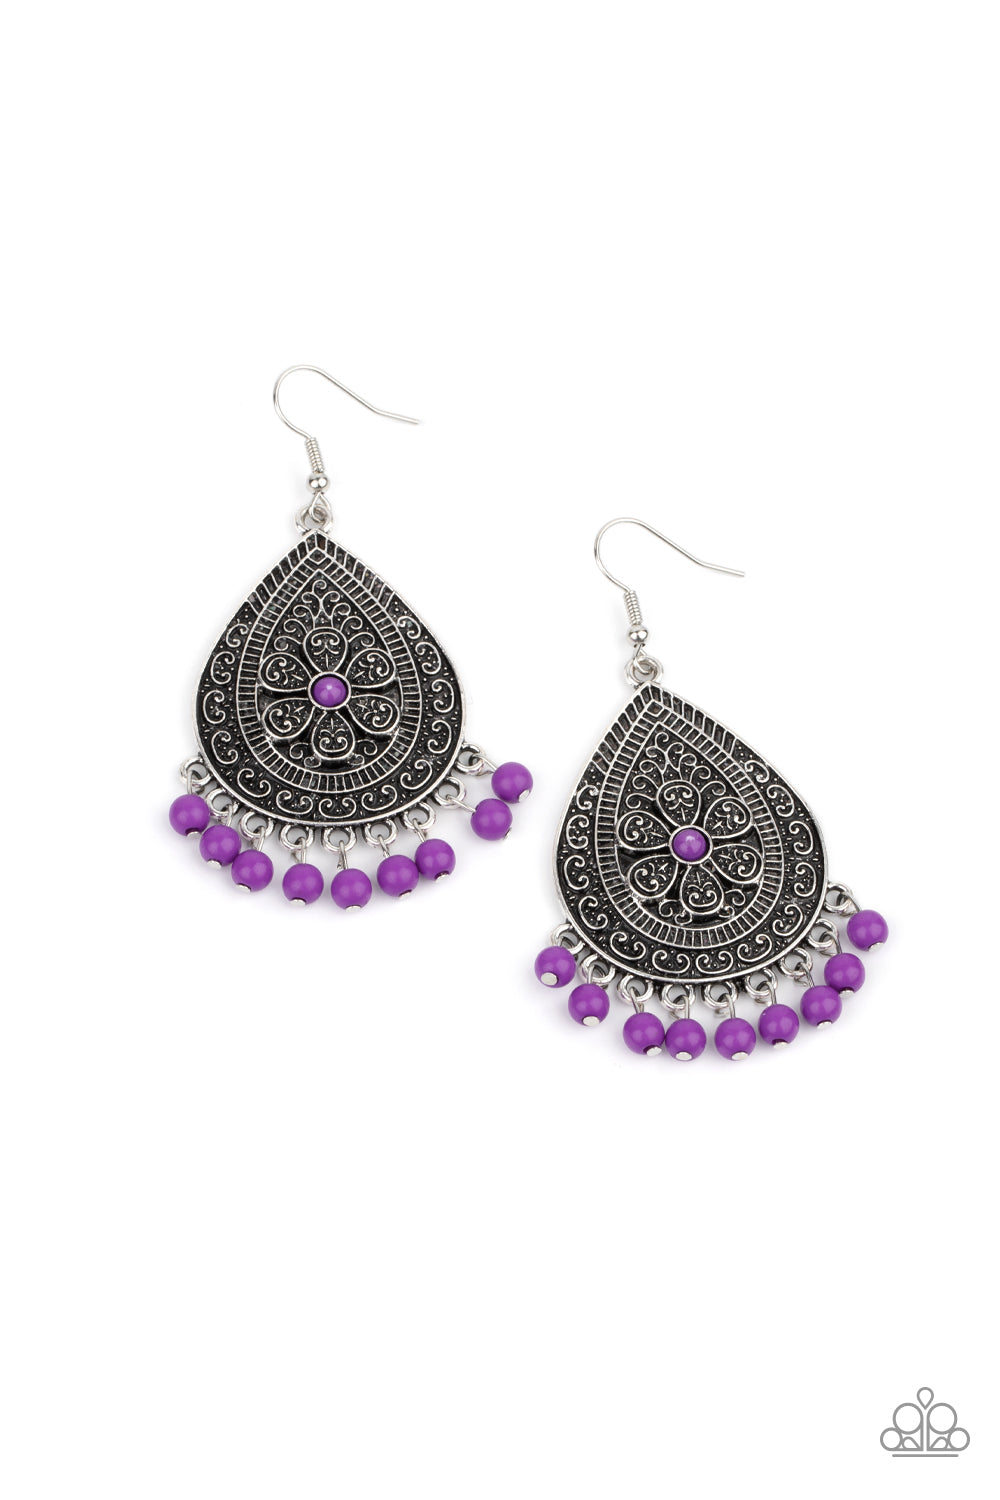 Blossoming Teardrops - Purple Earring freeshipping - JewLz4u Gemstone Gallery